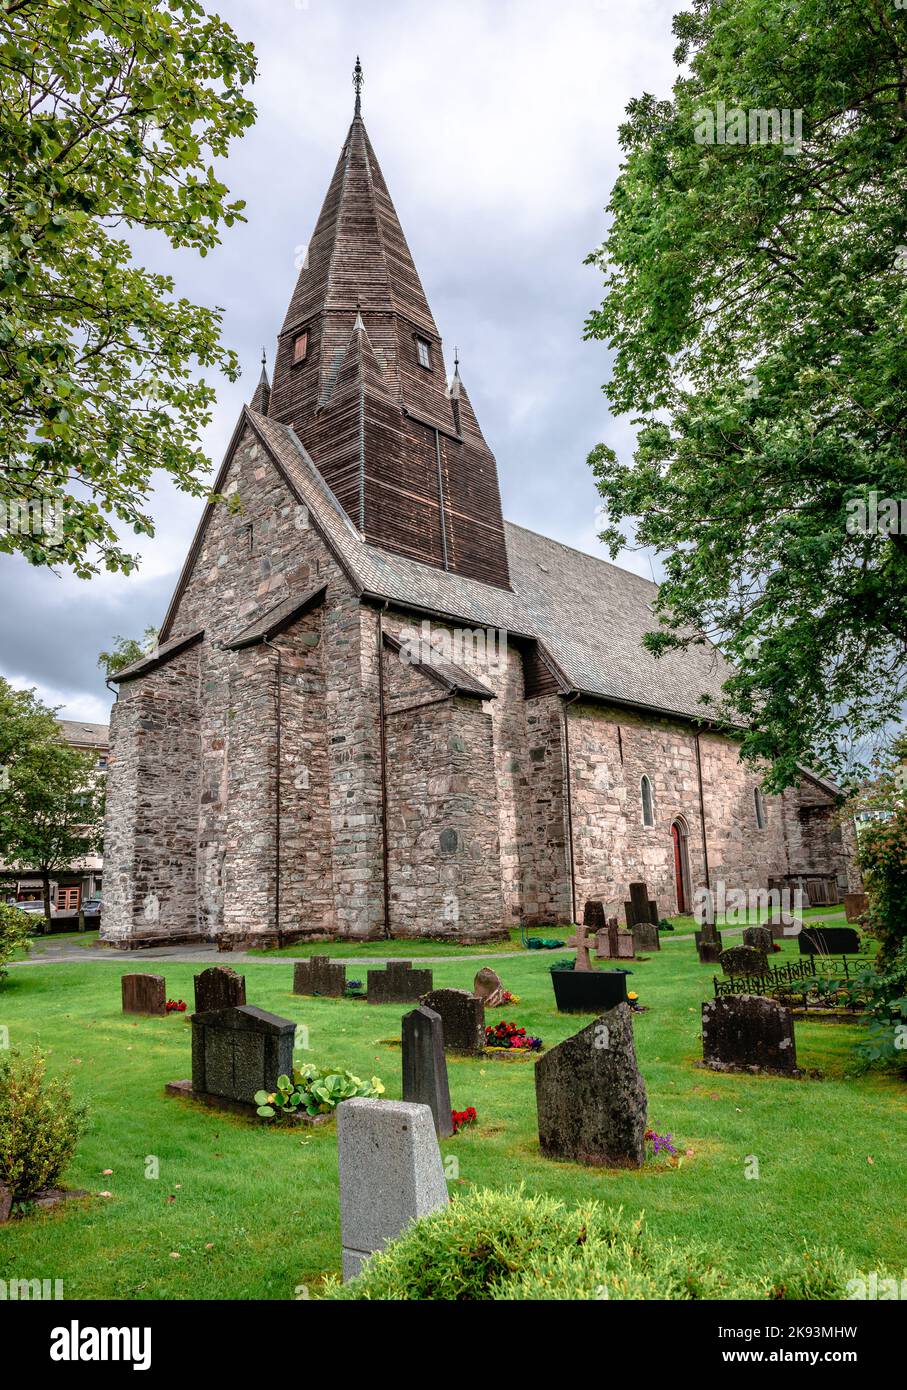 Voss Chiesa nel villaggio di Vossevangen (o Voss), nella contea di Vestland, Norvegia. Questa chiesa grigia in pietra fu costruita nel 1277 su un lungo progetto. Foto Stock